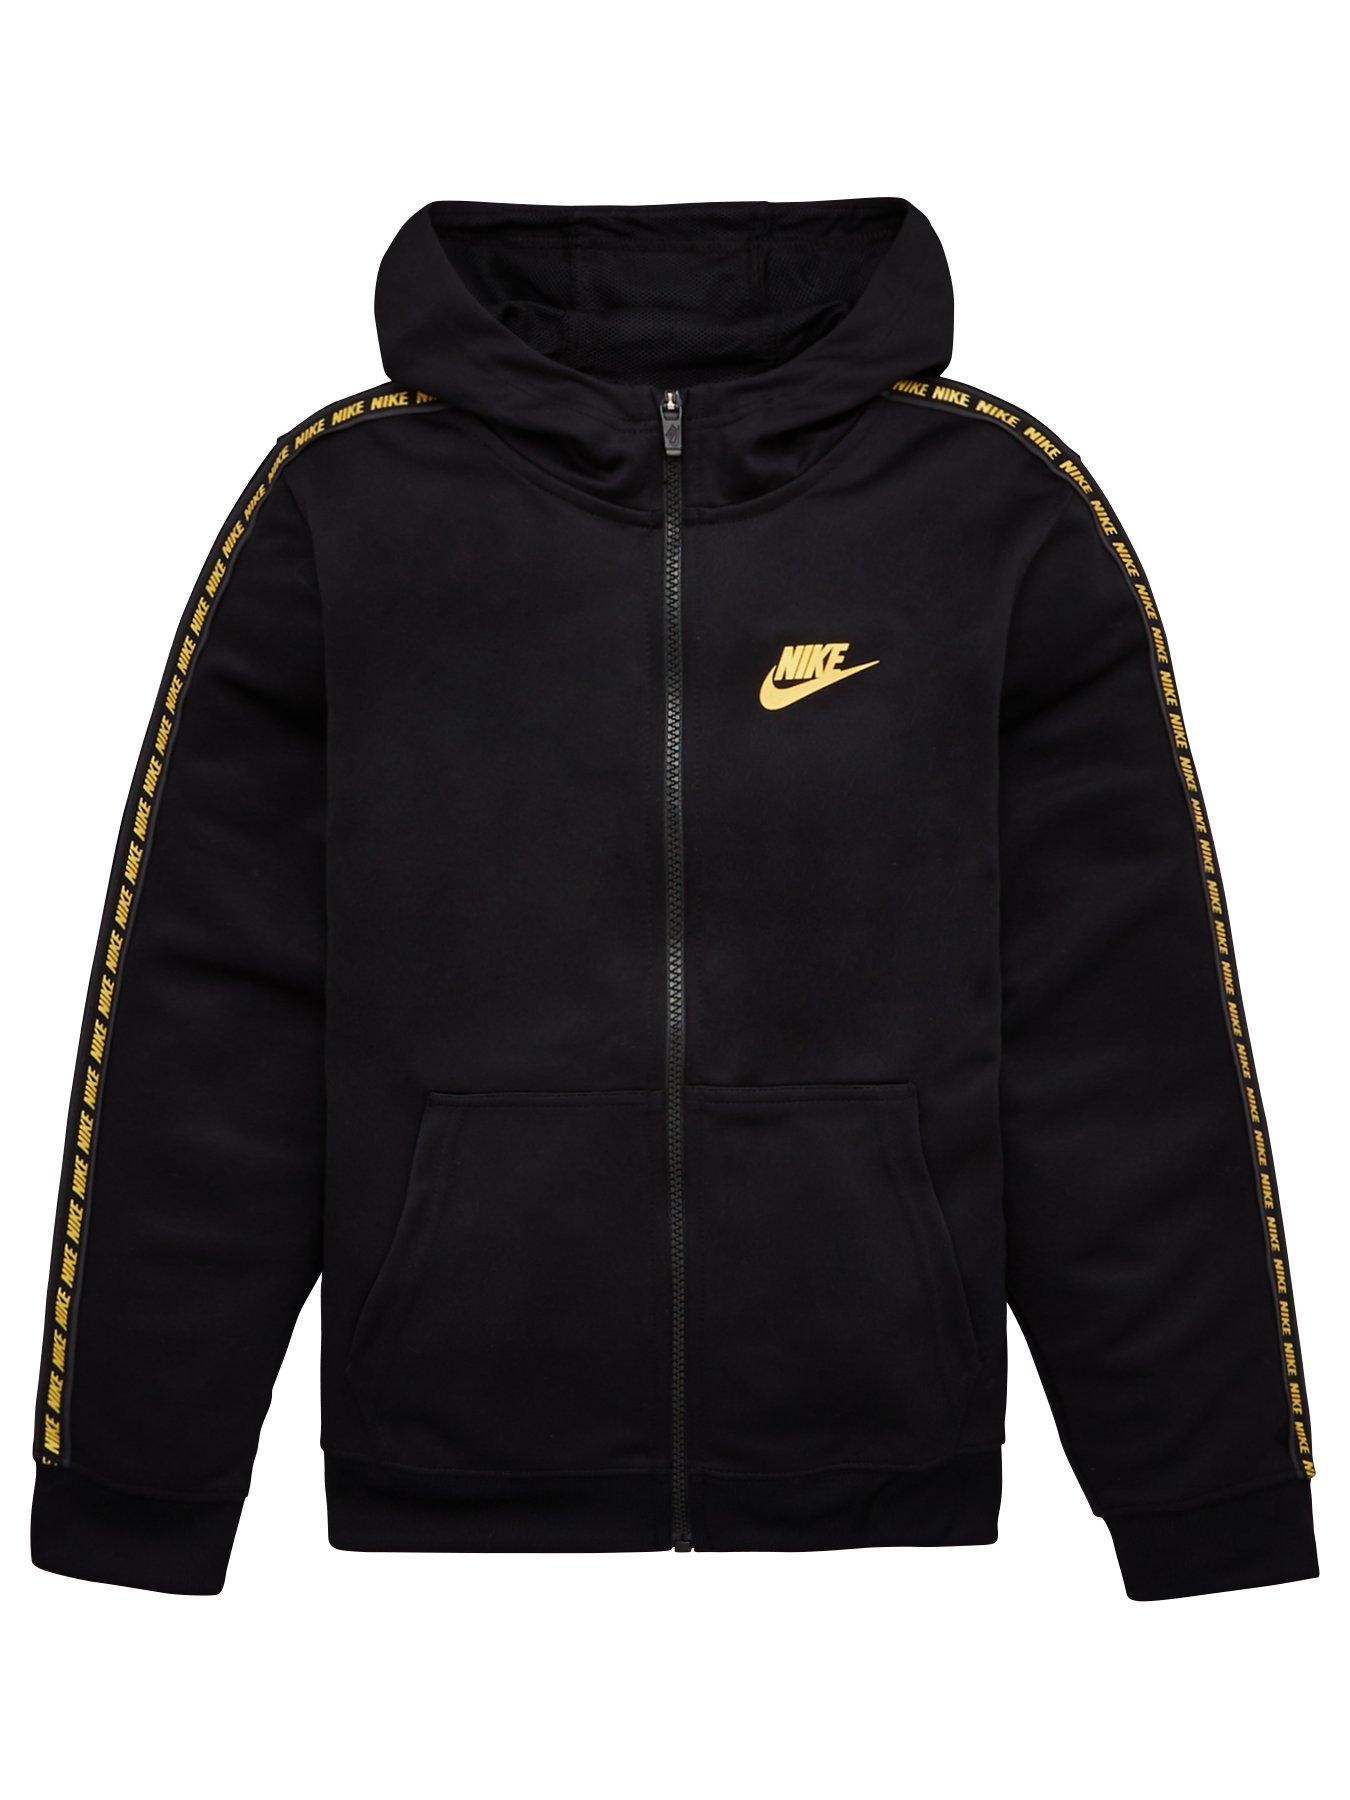 Black Nike Www Littlewoodsireland Ie - cool black flaming nike hoodie roblox